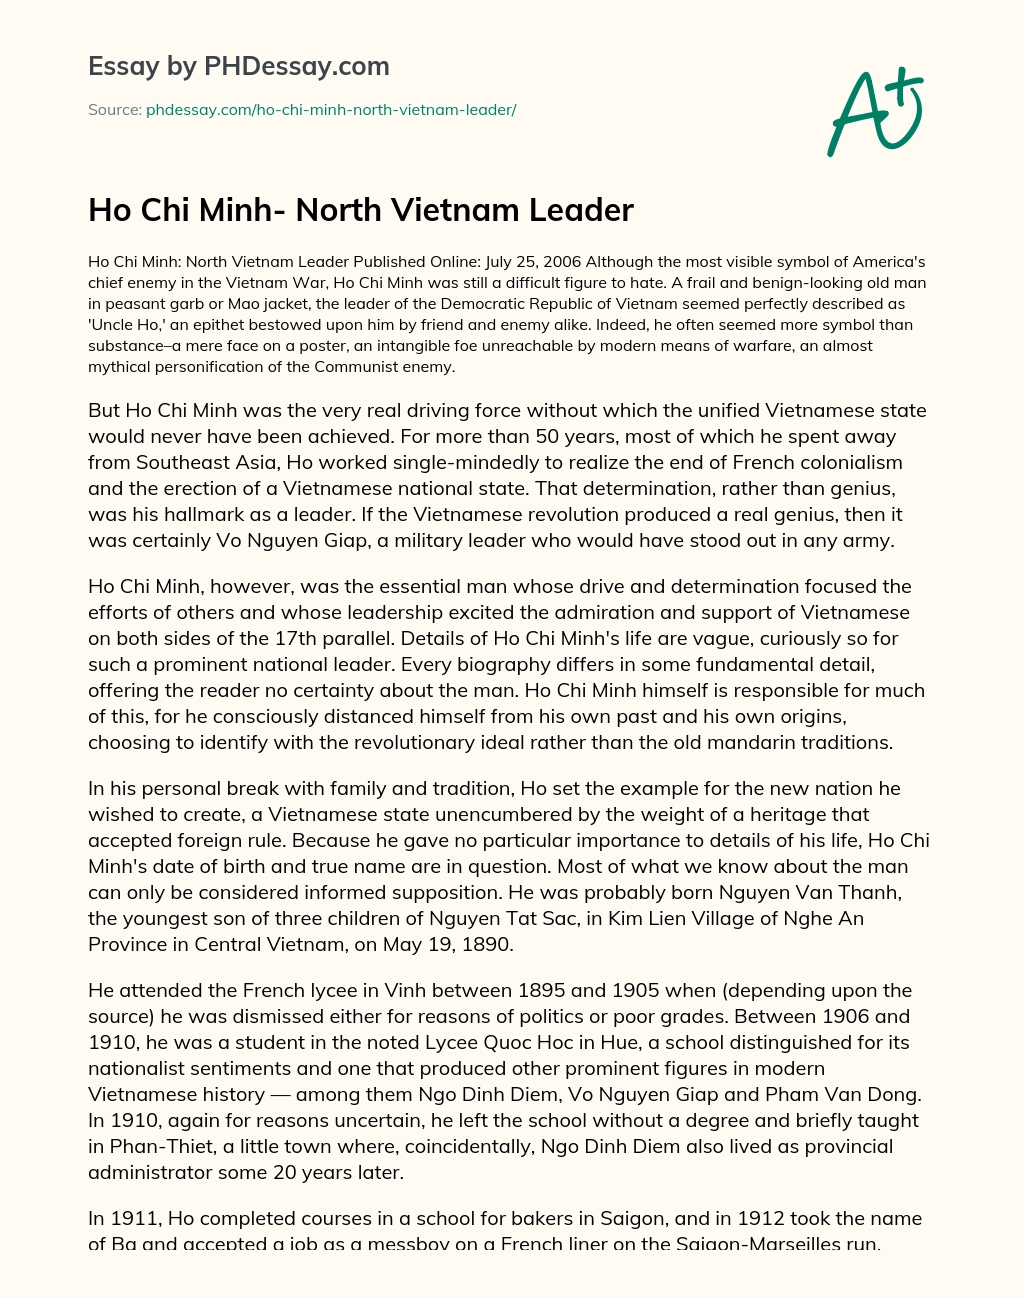 Ho Chi Minh- North Vietnam Leader essay